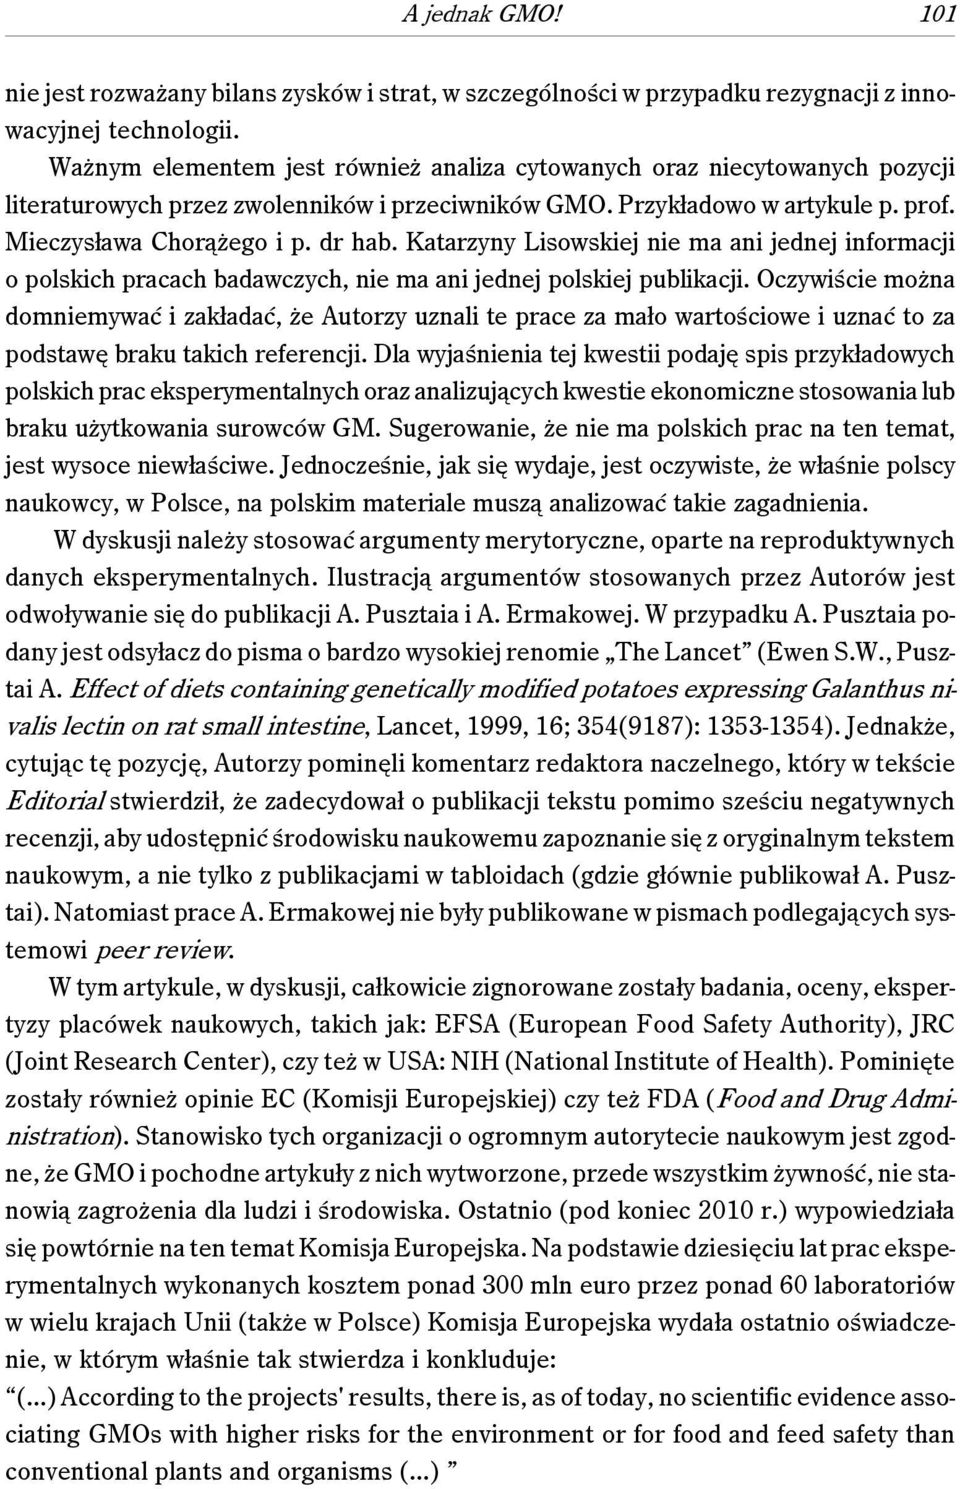 Katarzyny Lisowskiej nie ma ani jednej informacji o polskich pracach badawczych, nie ma ani jednej polskiej publikacji.